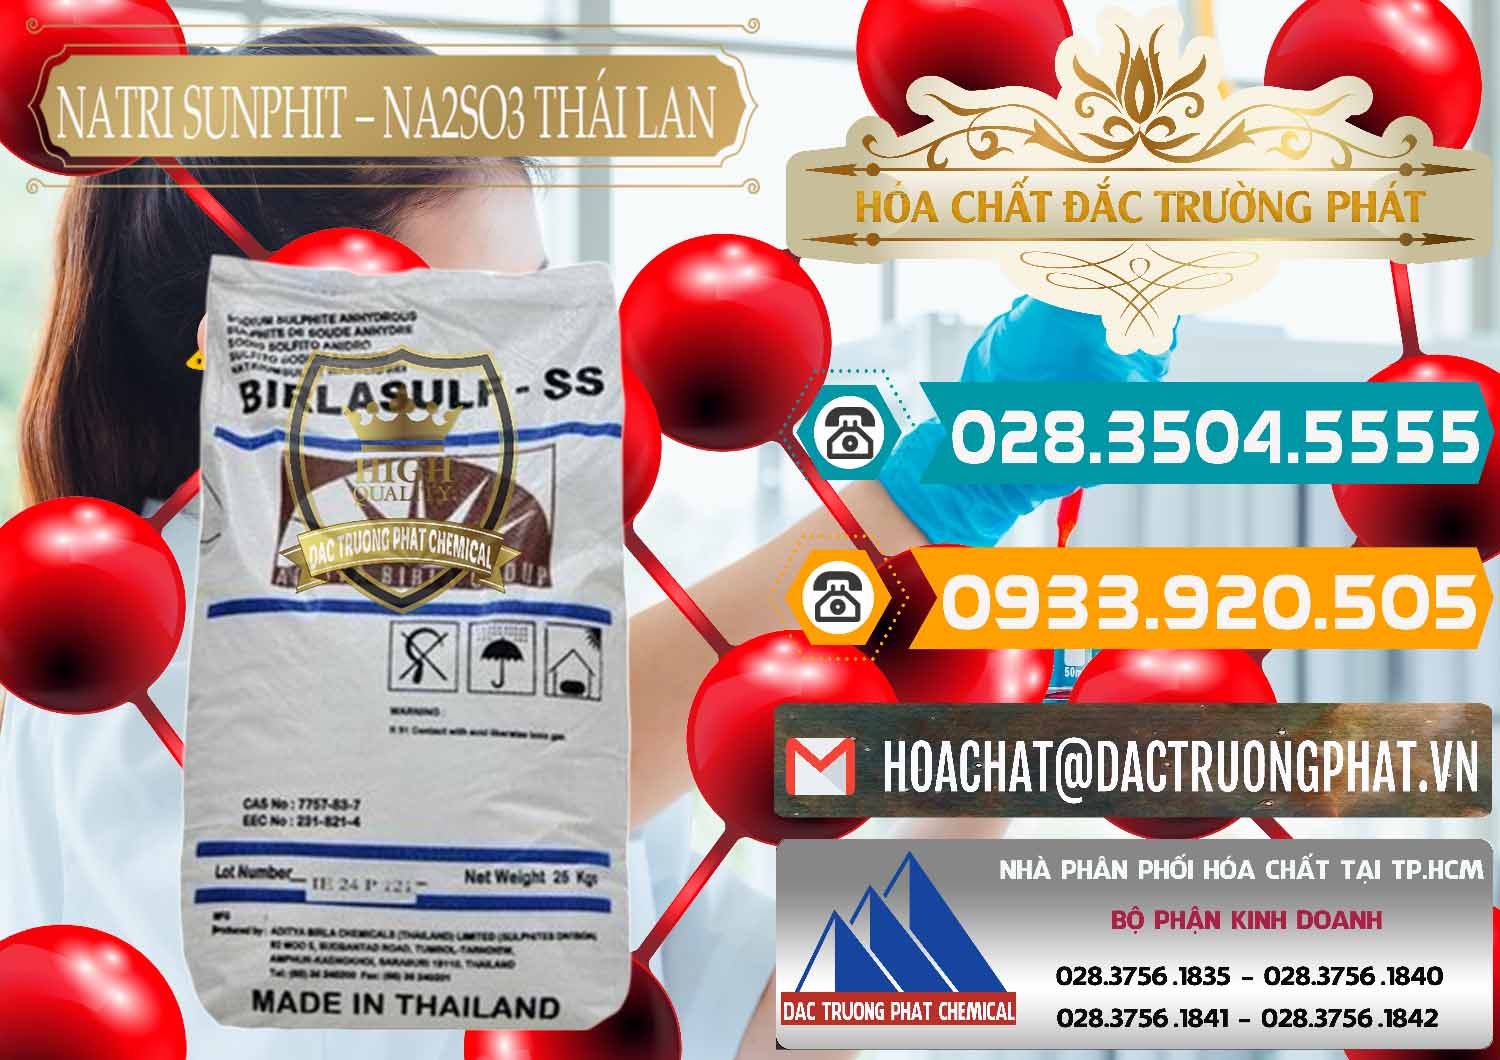 Công ty chuyên bán - phân phối Natri Sunphit - NA2SO3 Thái Lan - 0105 - Công ty chuyên kinh doanh - cung cấp hóa chất tại TP.HCM - congtyhoachat.vn